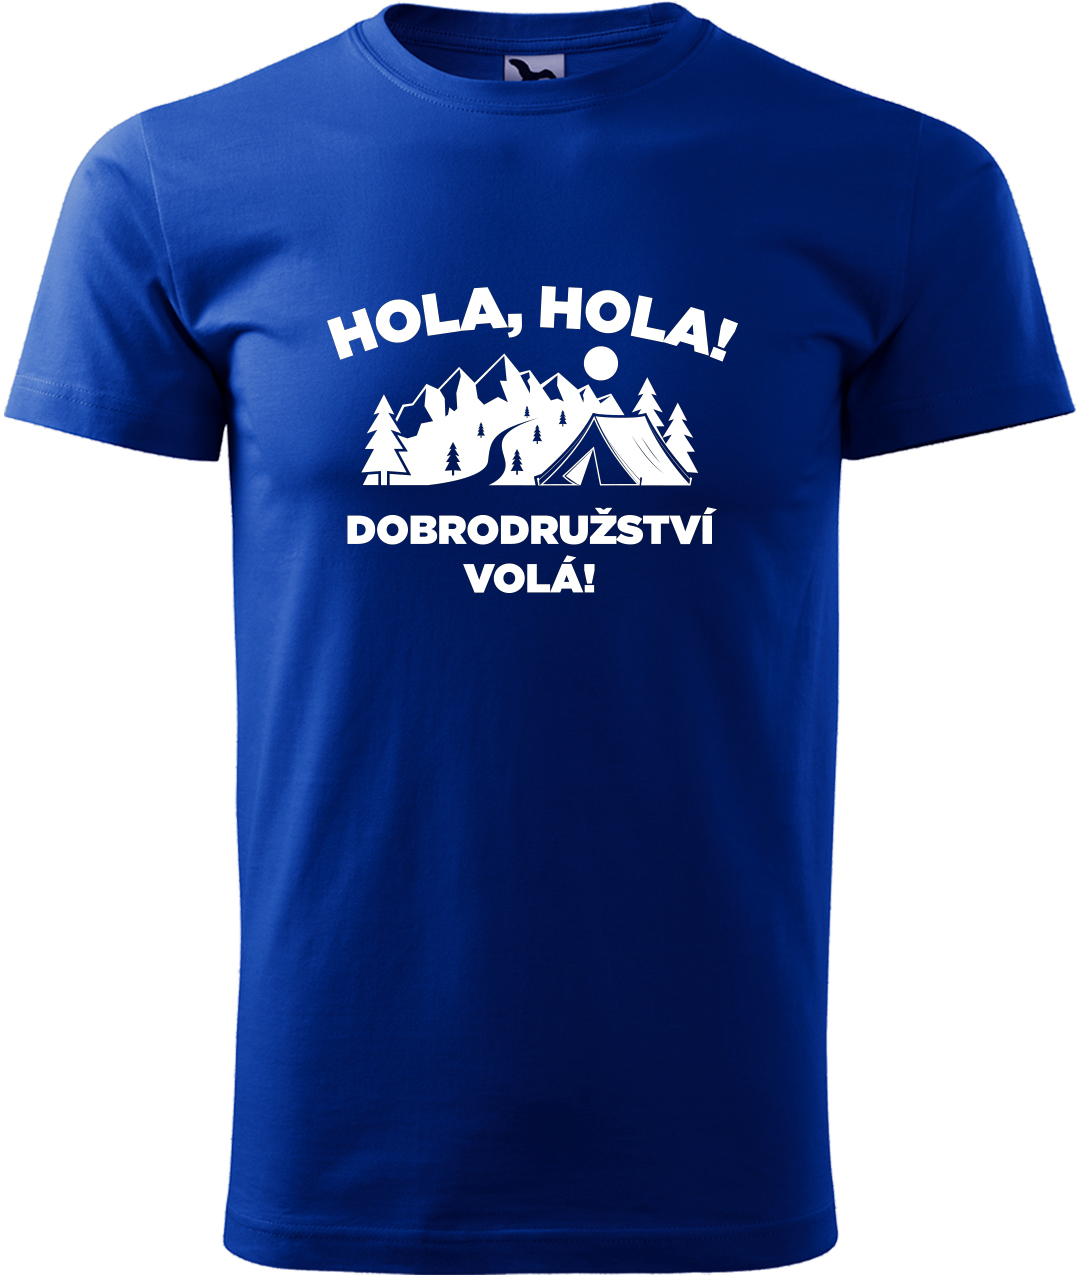 Pánské cestovatelské tričko - Hola hola! Dobrodružství volá! Velikost: L, Barva: Královská modrá (05), Střih: pánský